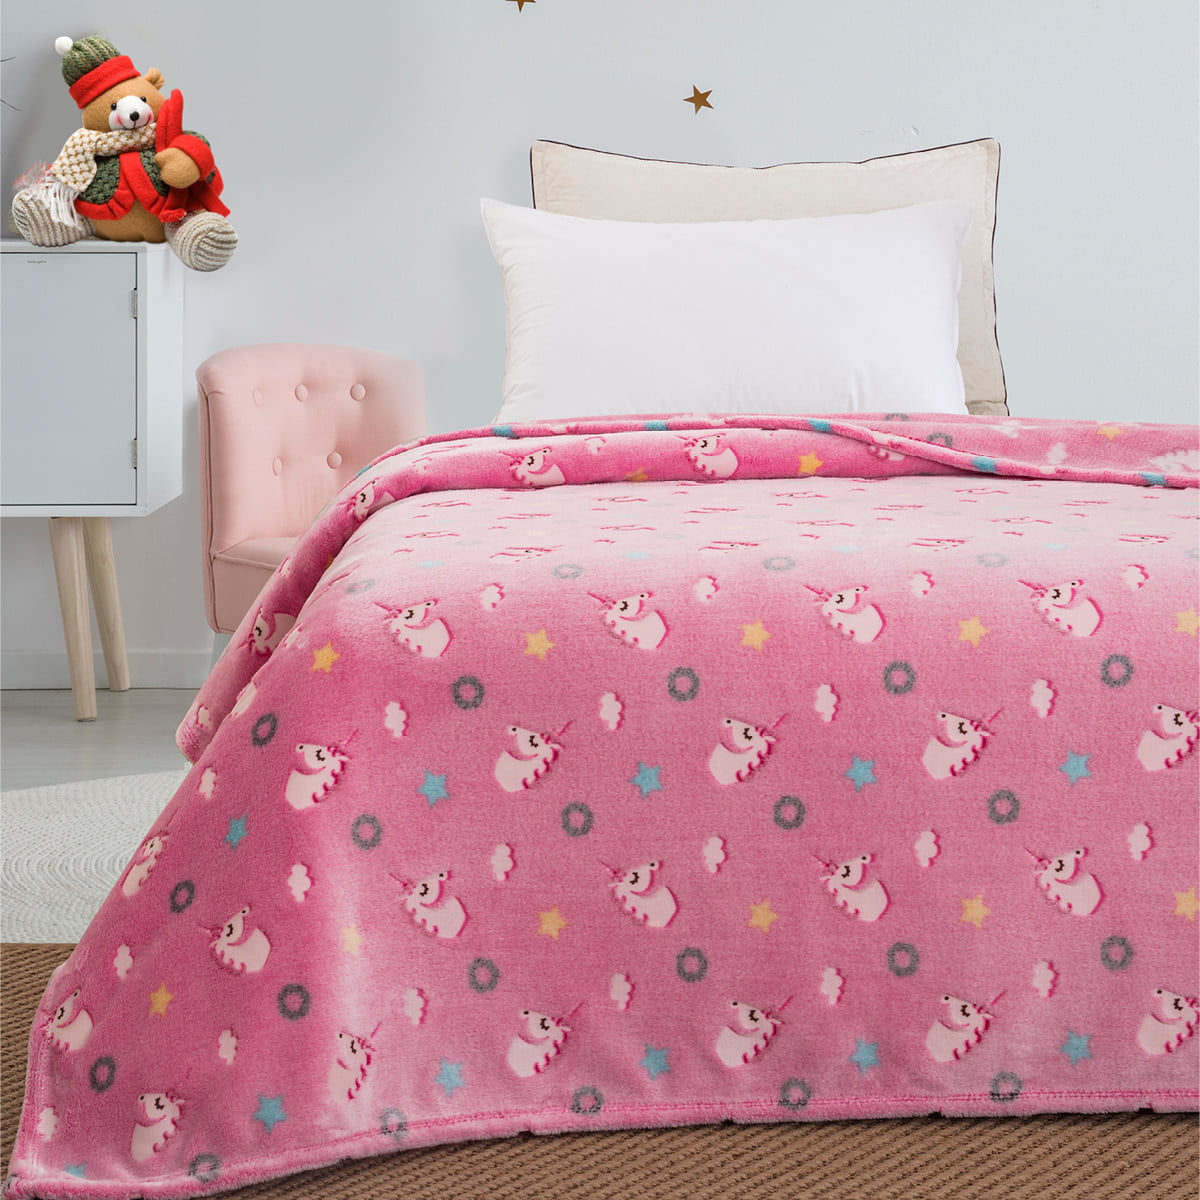 Κουβέρτα μονή φωσφορίζουσα Art 6093  160×220 Ροζ Beauty Home